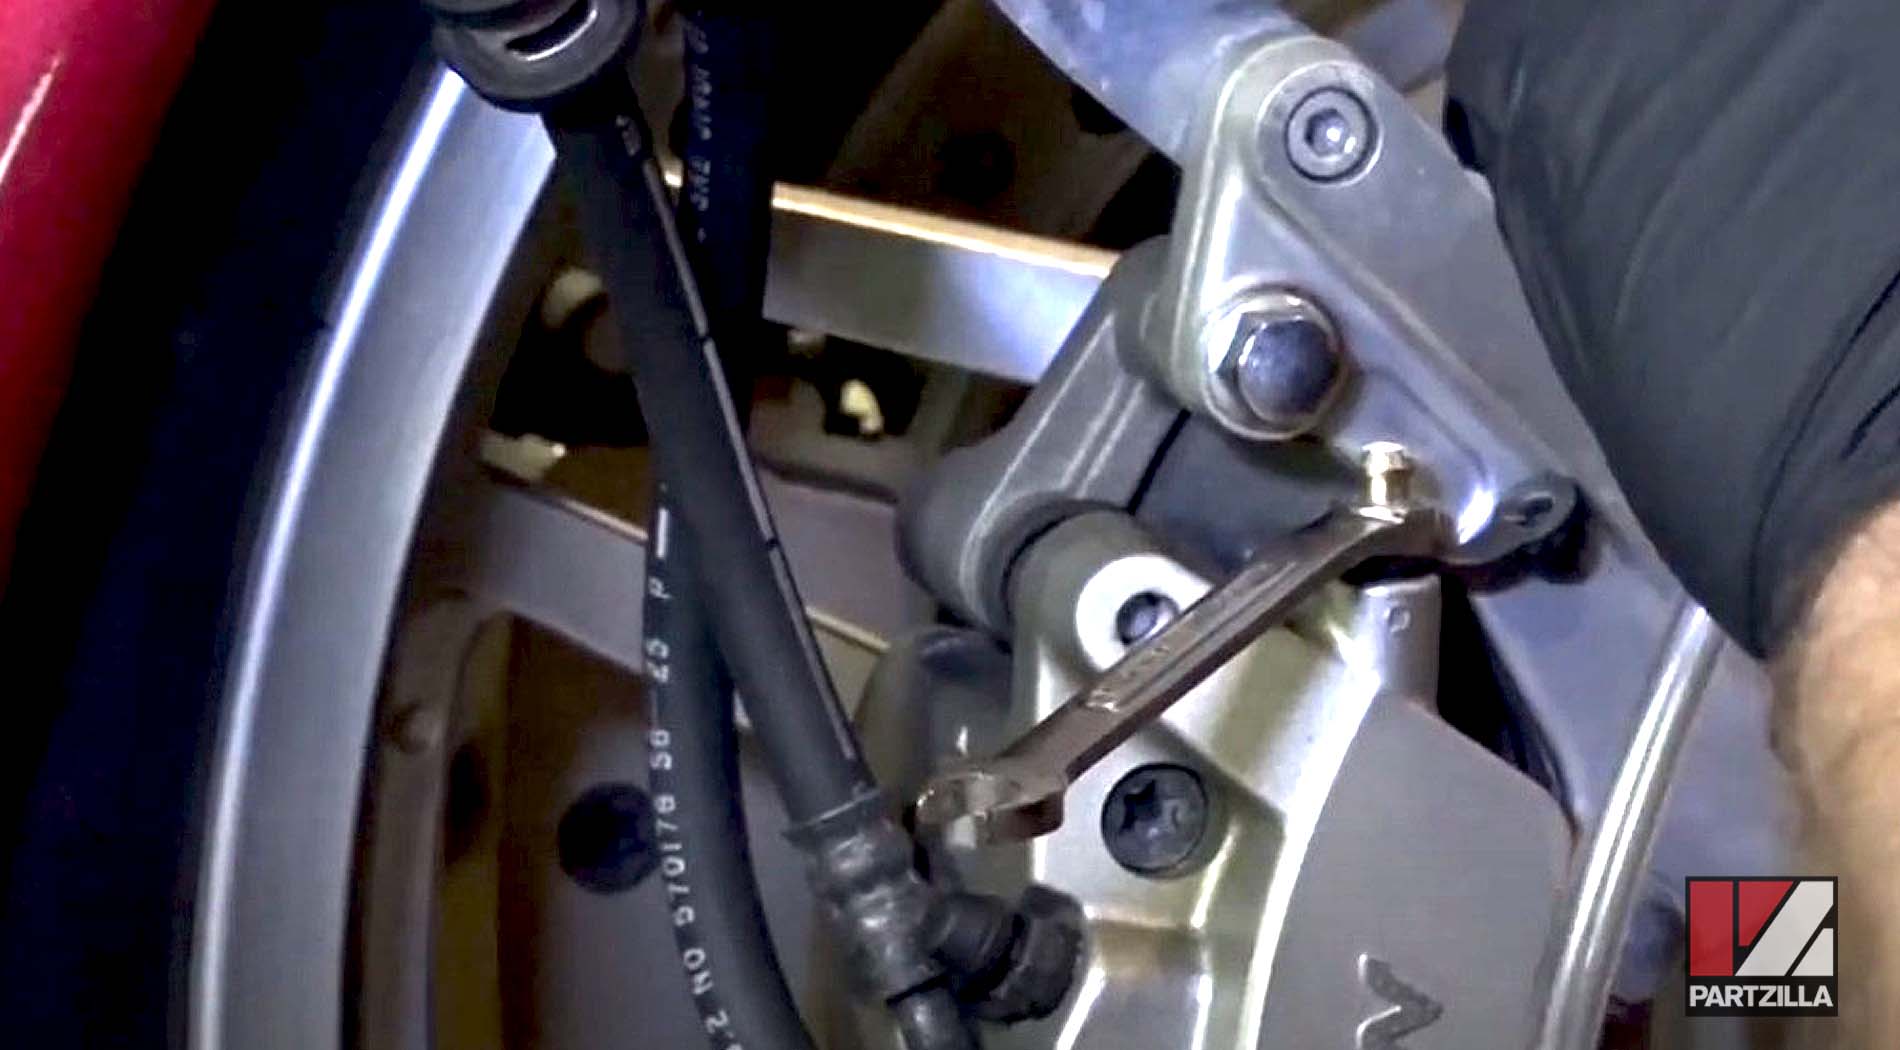 Honda VTX 1800 brake bleeder valves